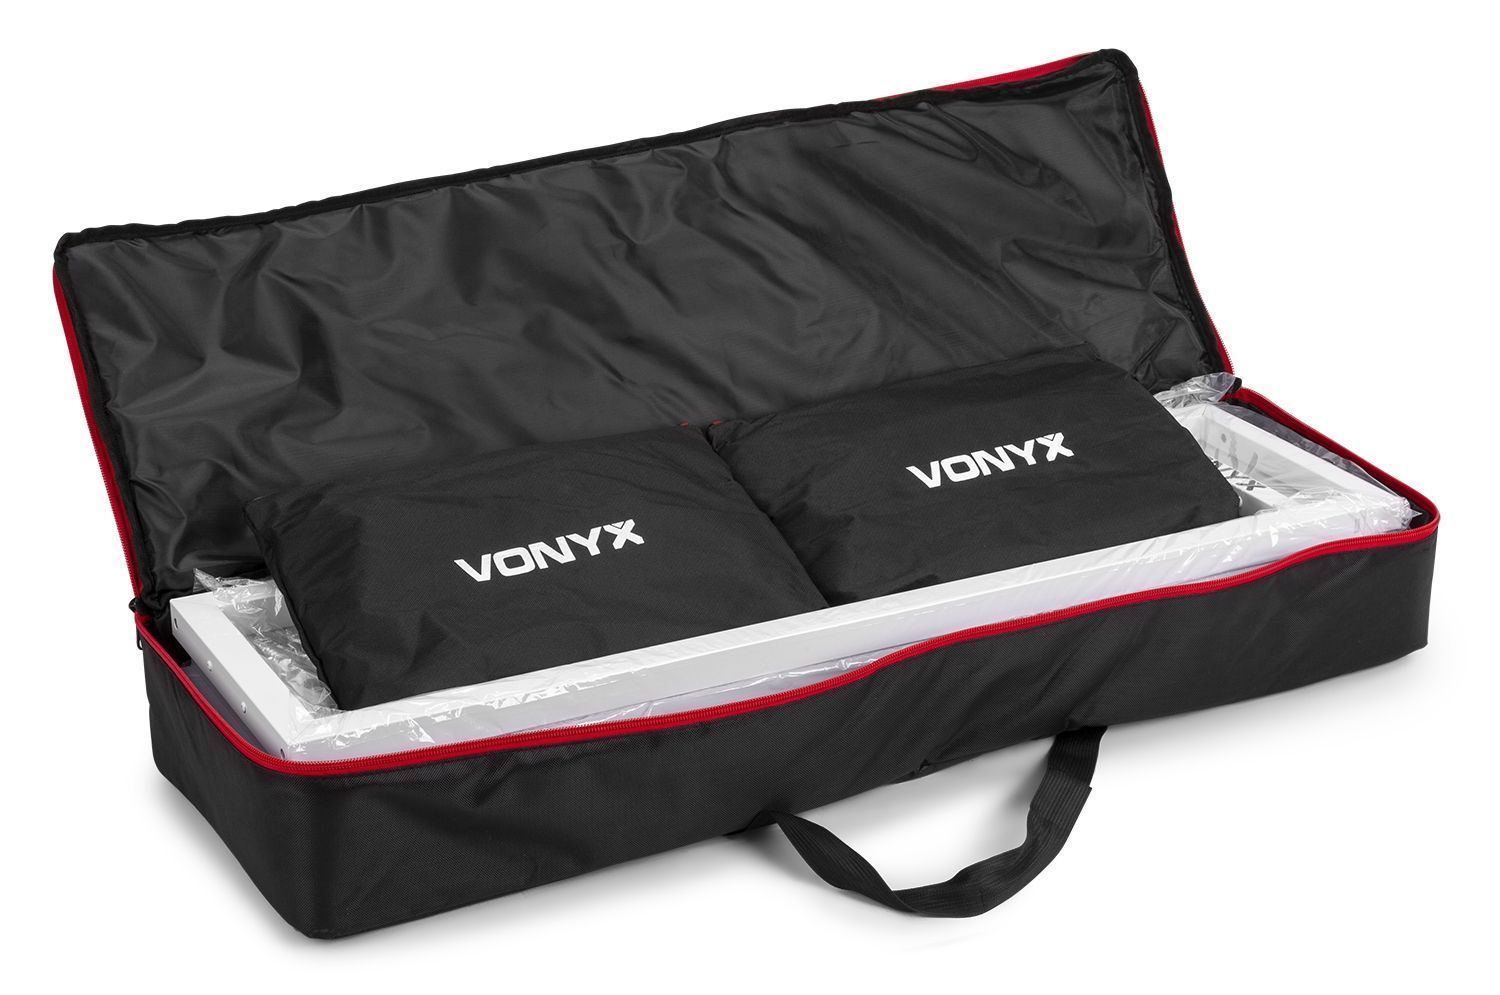 Vonyx speakerstandaards|retourdeals